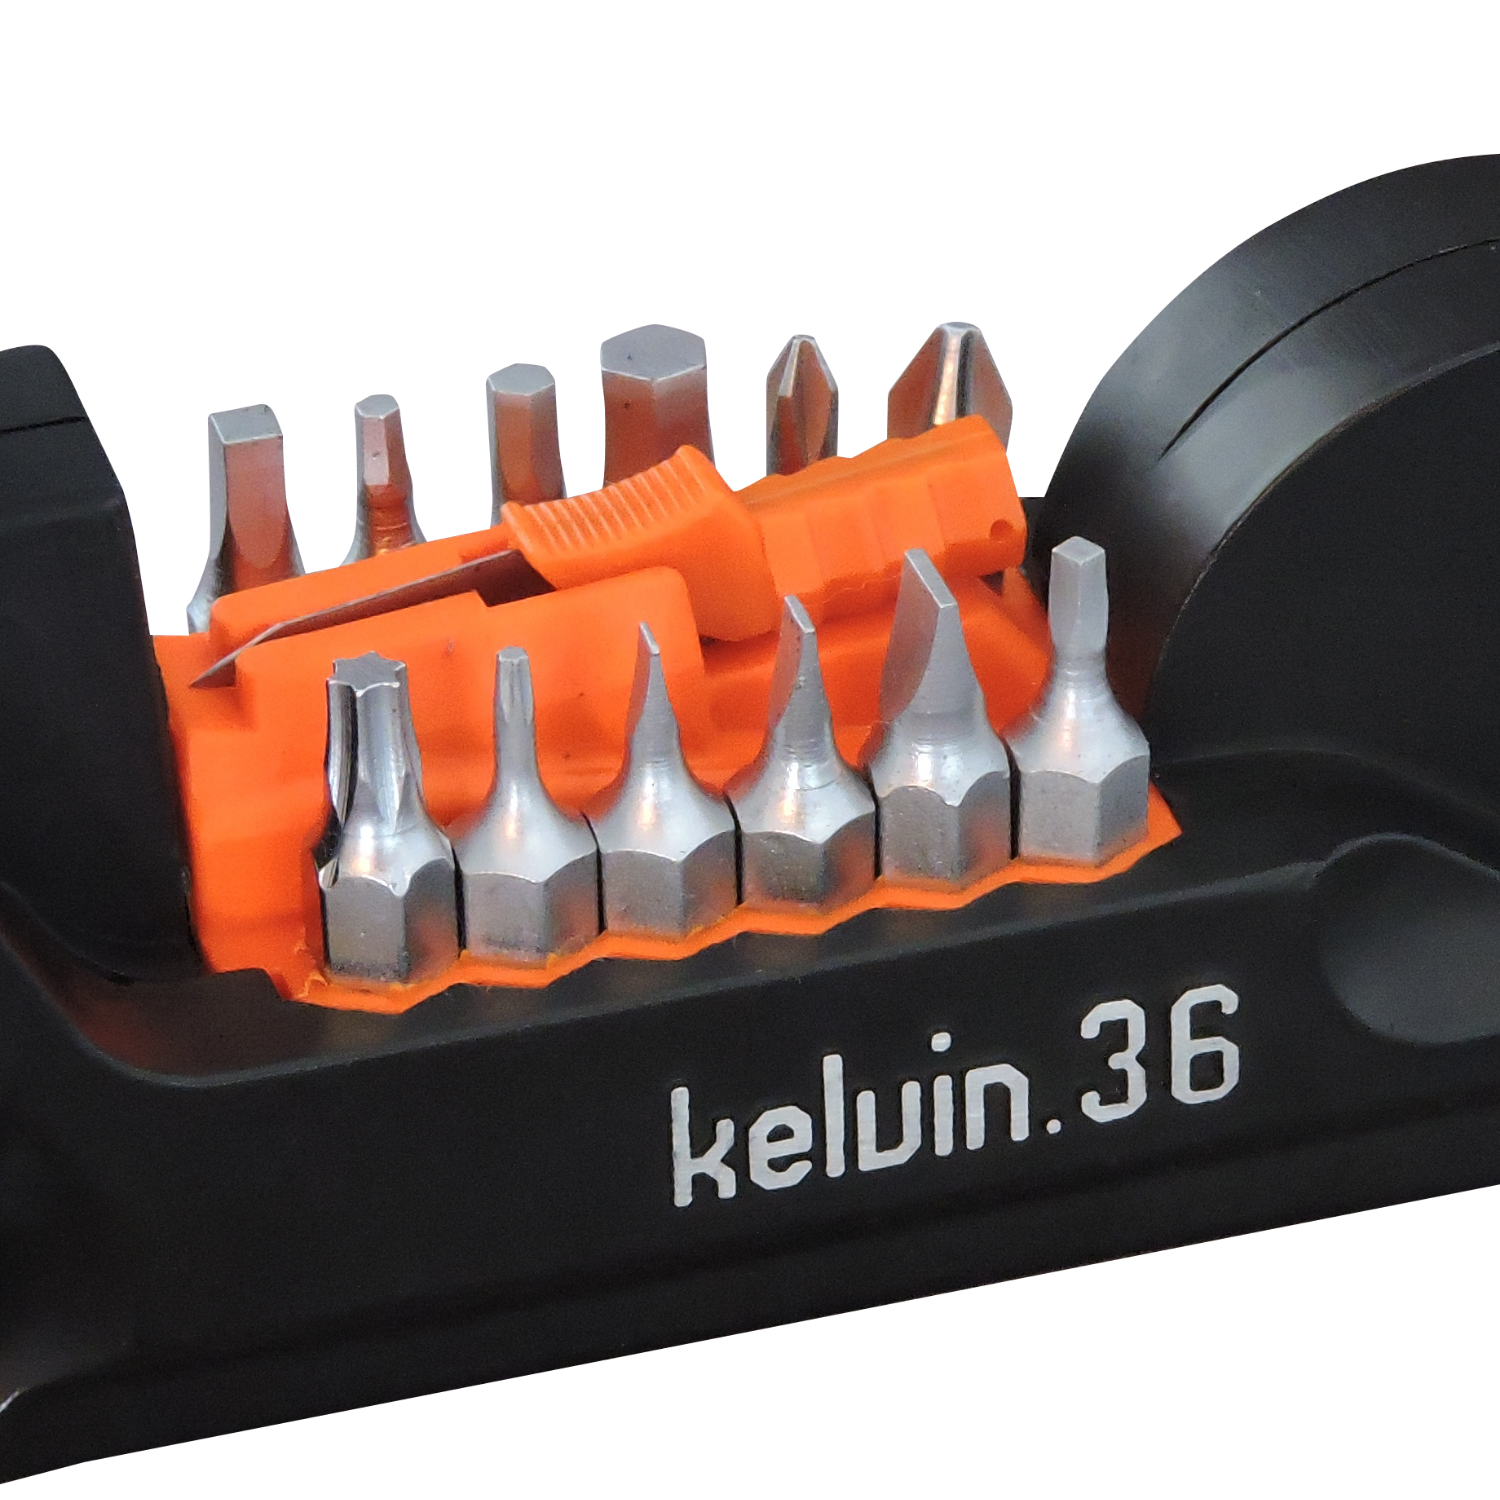 Kelvin 36 - The Ultimate Urban Multitool